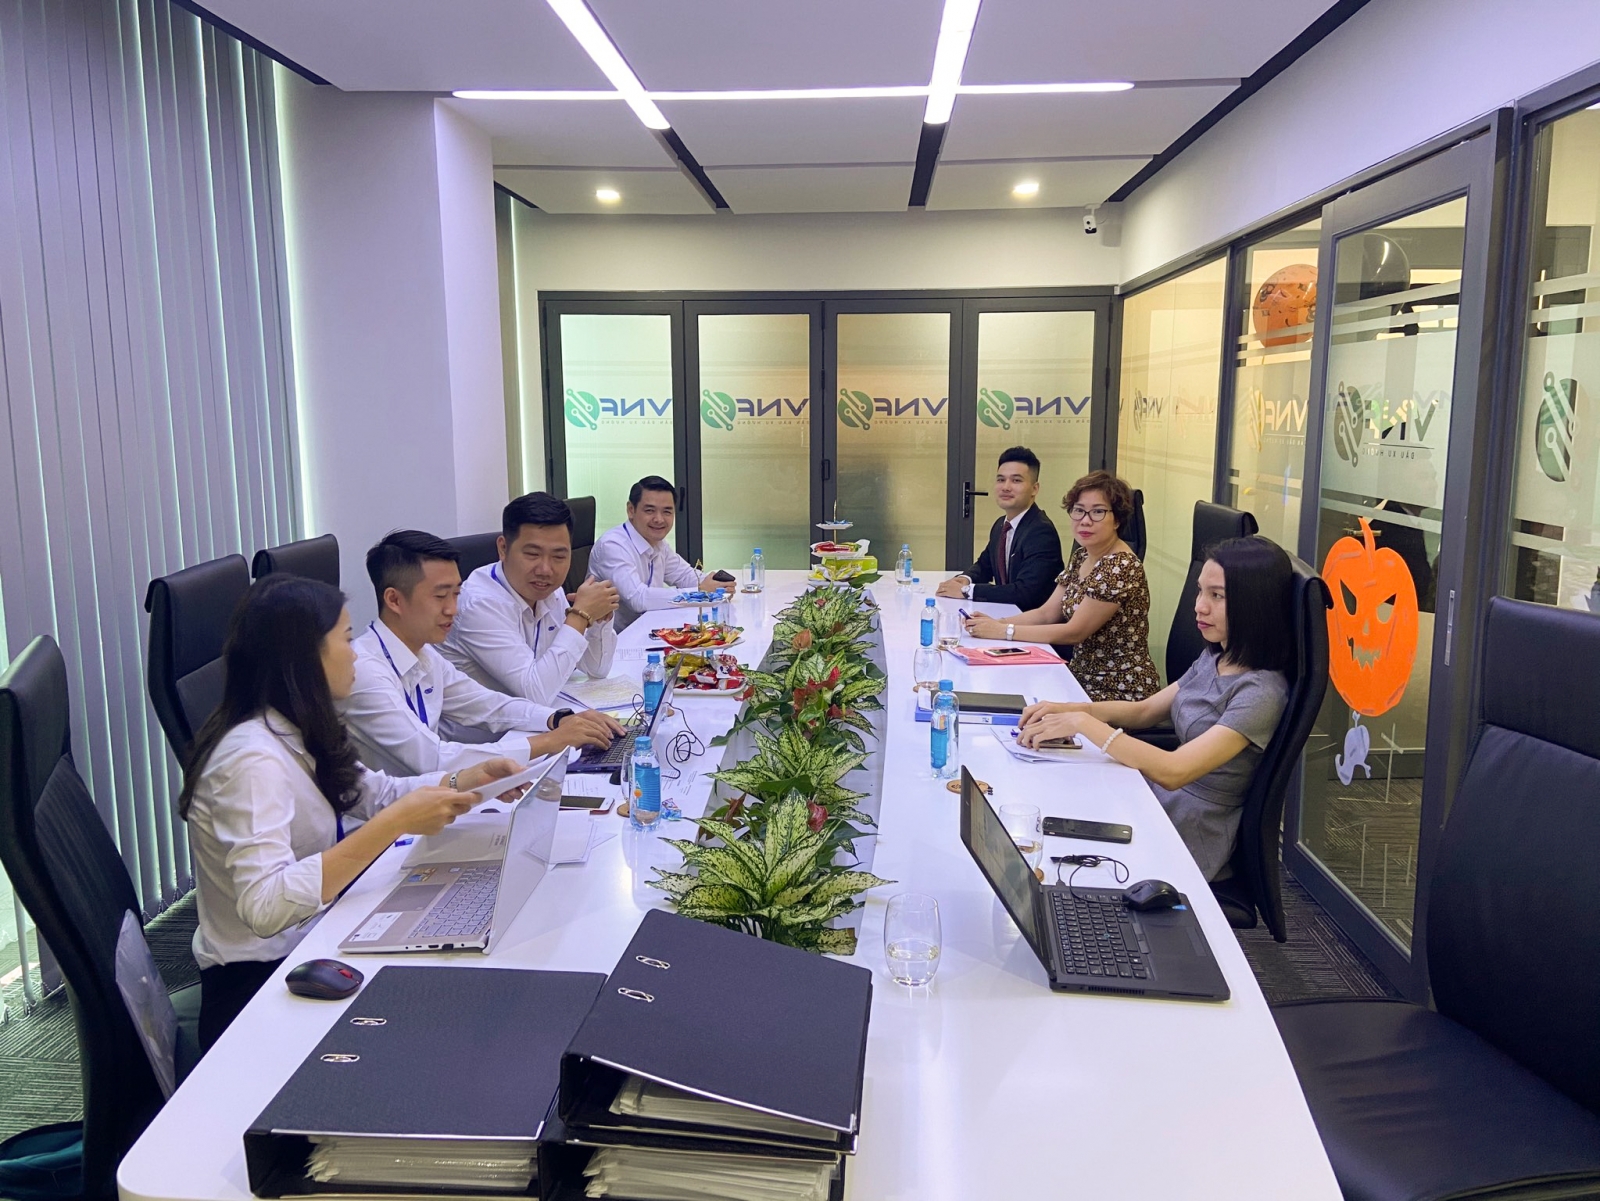 Sở Giao dịch Hàng hóa Việt Nam (MXV) thực hiện kiểm tra định kỳ các Thành viên kinh doanh trên toàn quốc